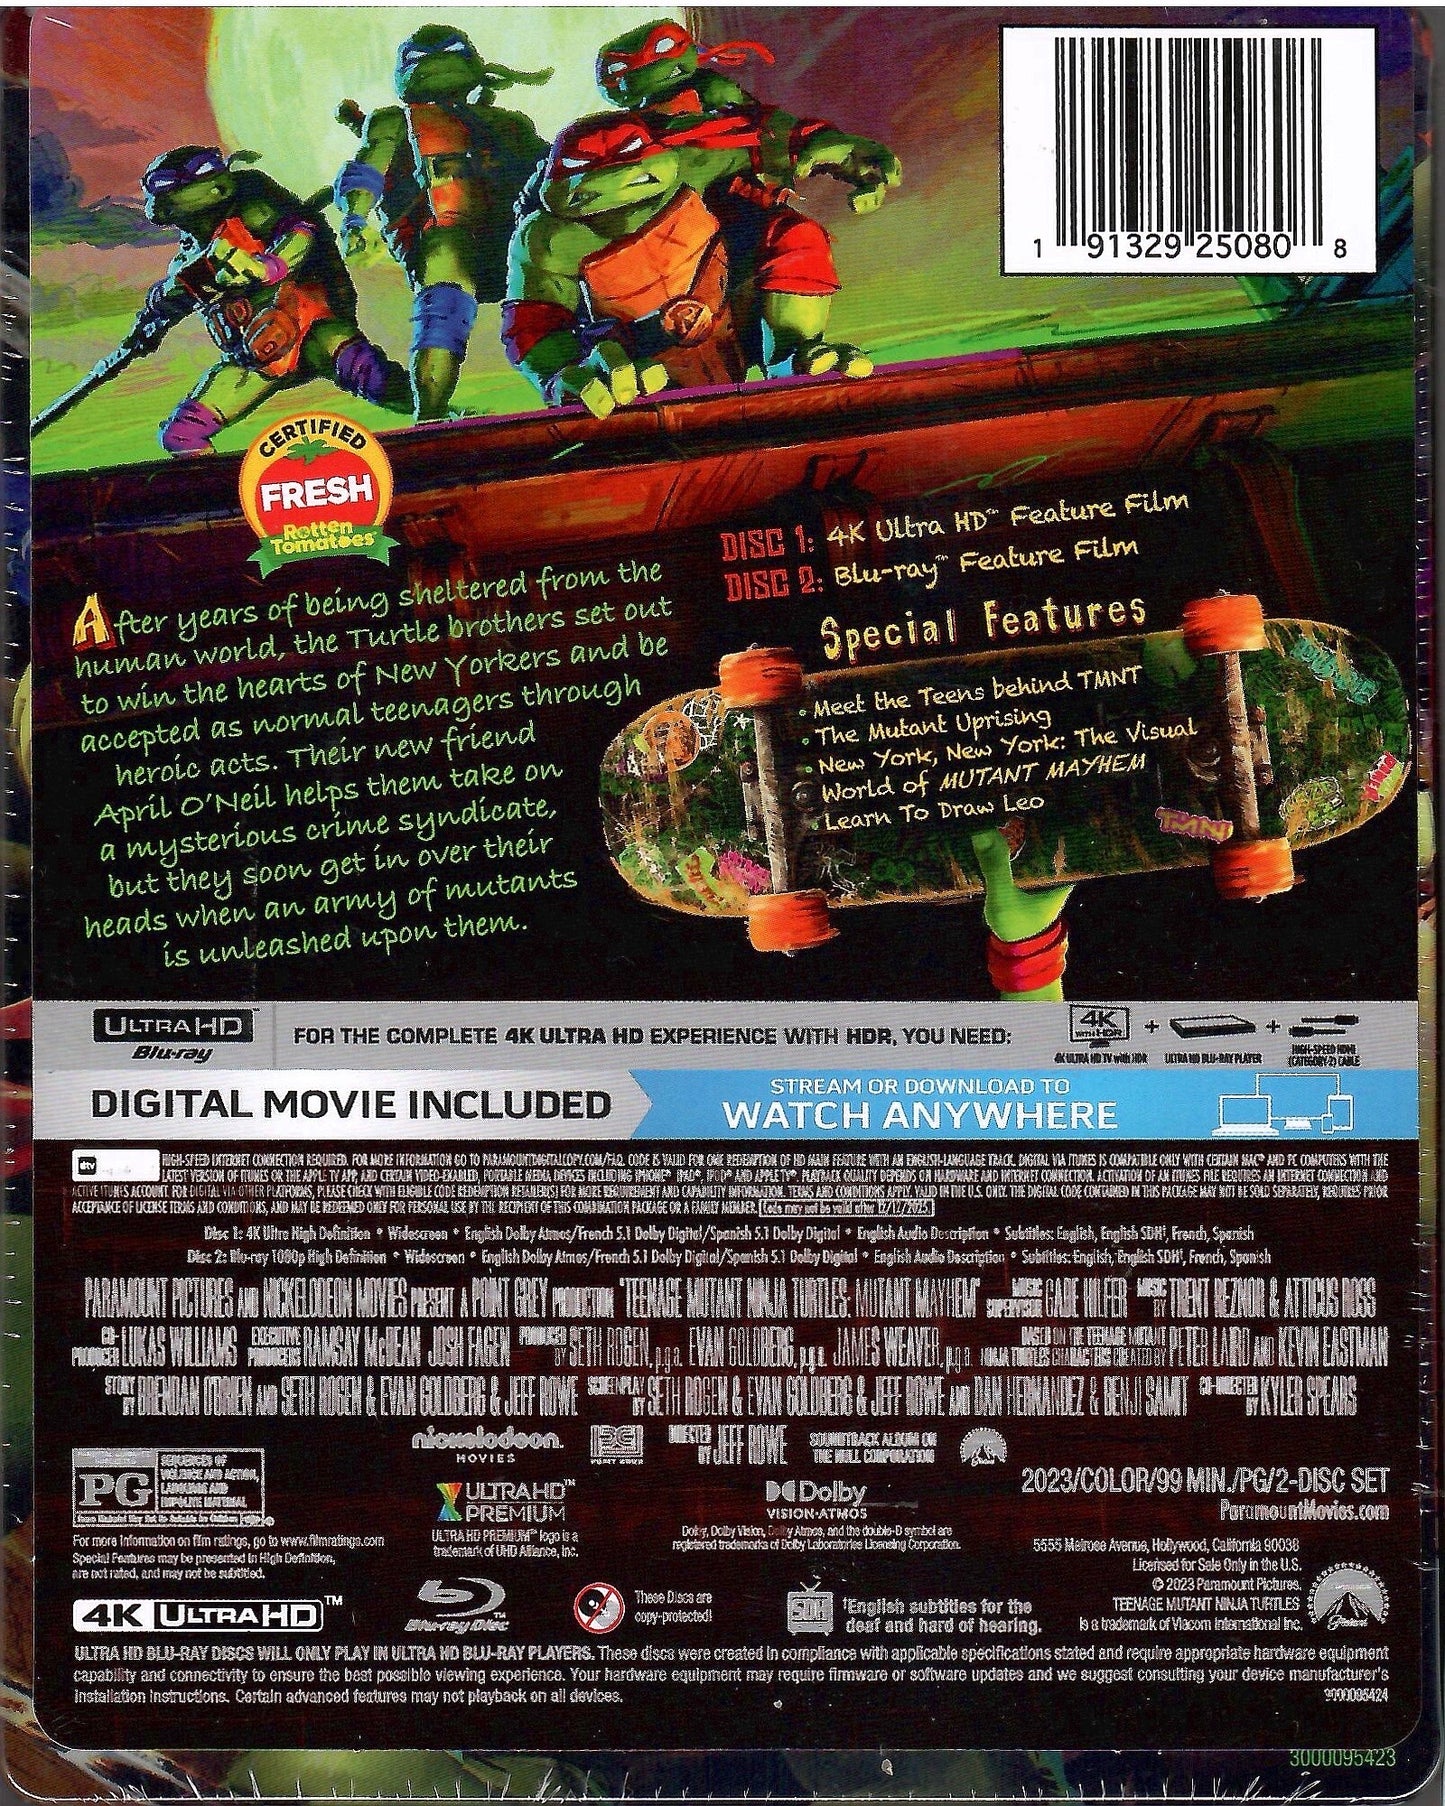 Teenage Mutant Ninja Turtles: Mutant Mayhem (4K UHD Steelbook)